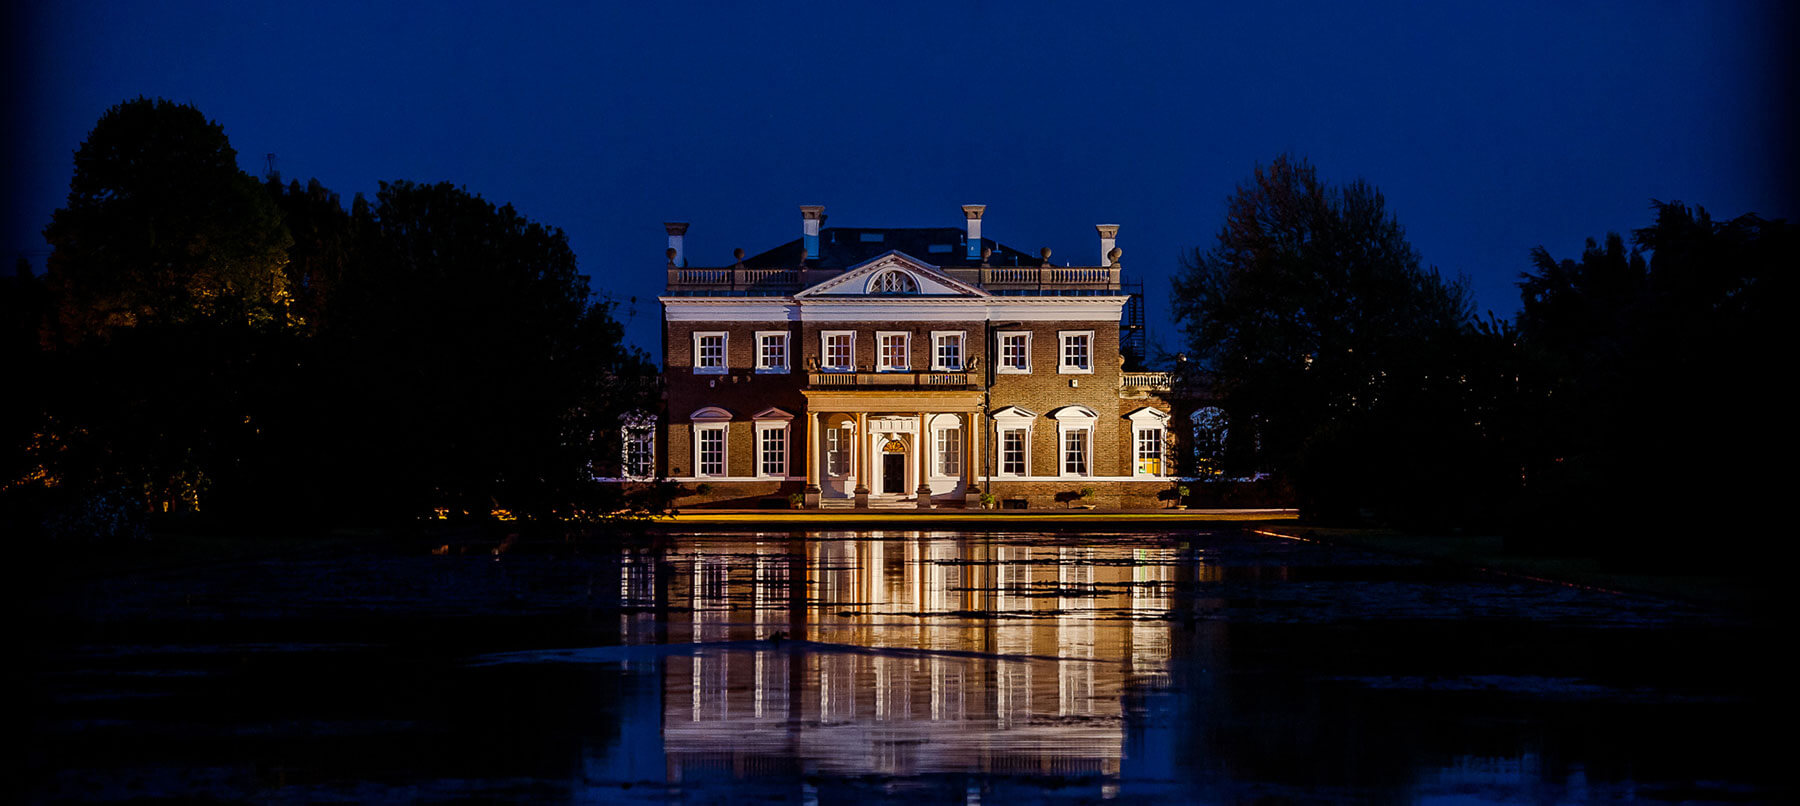 Boreham house venue in night